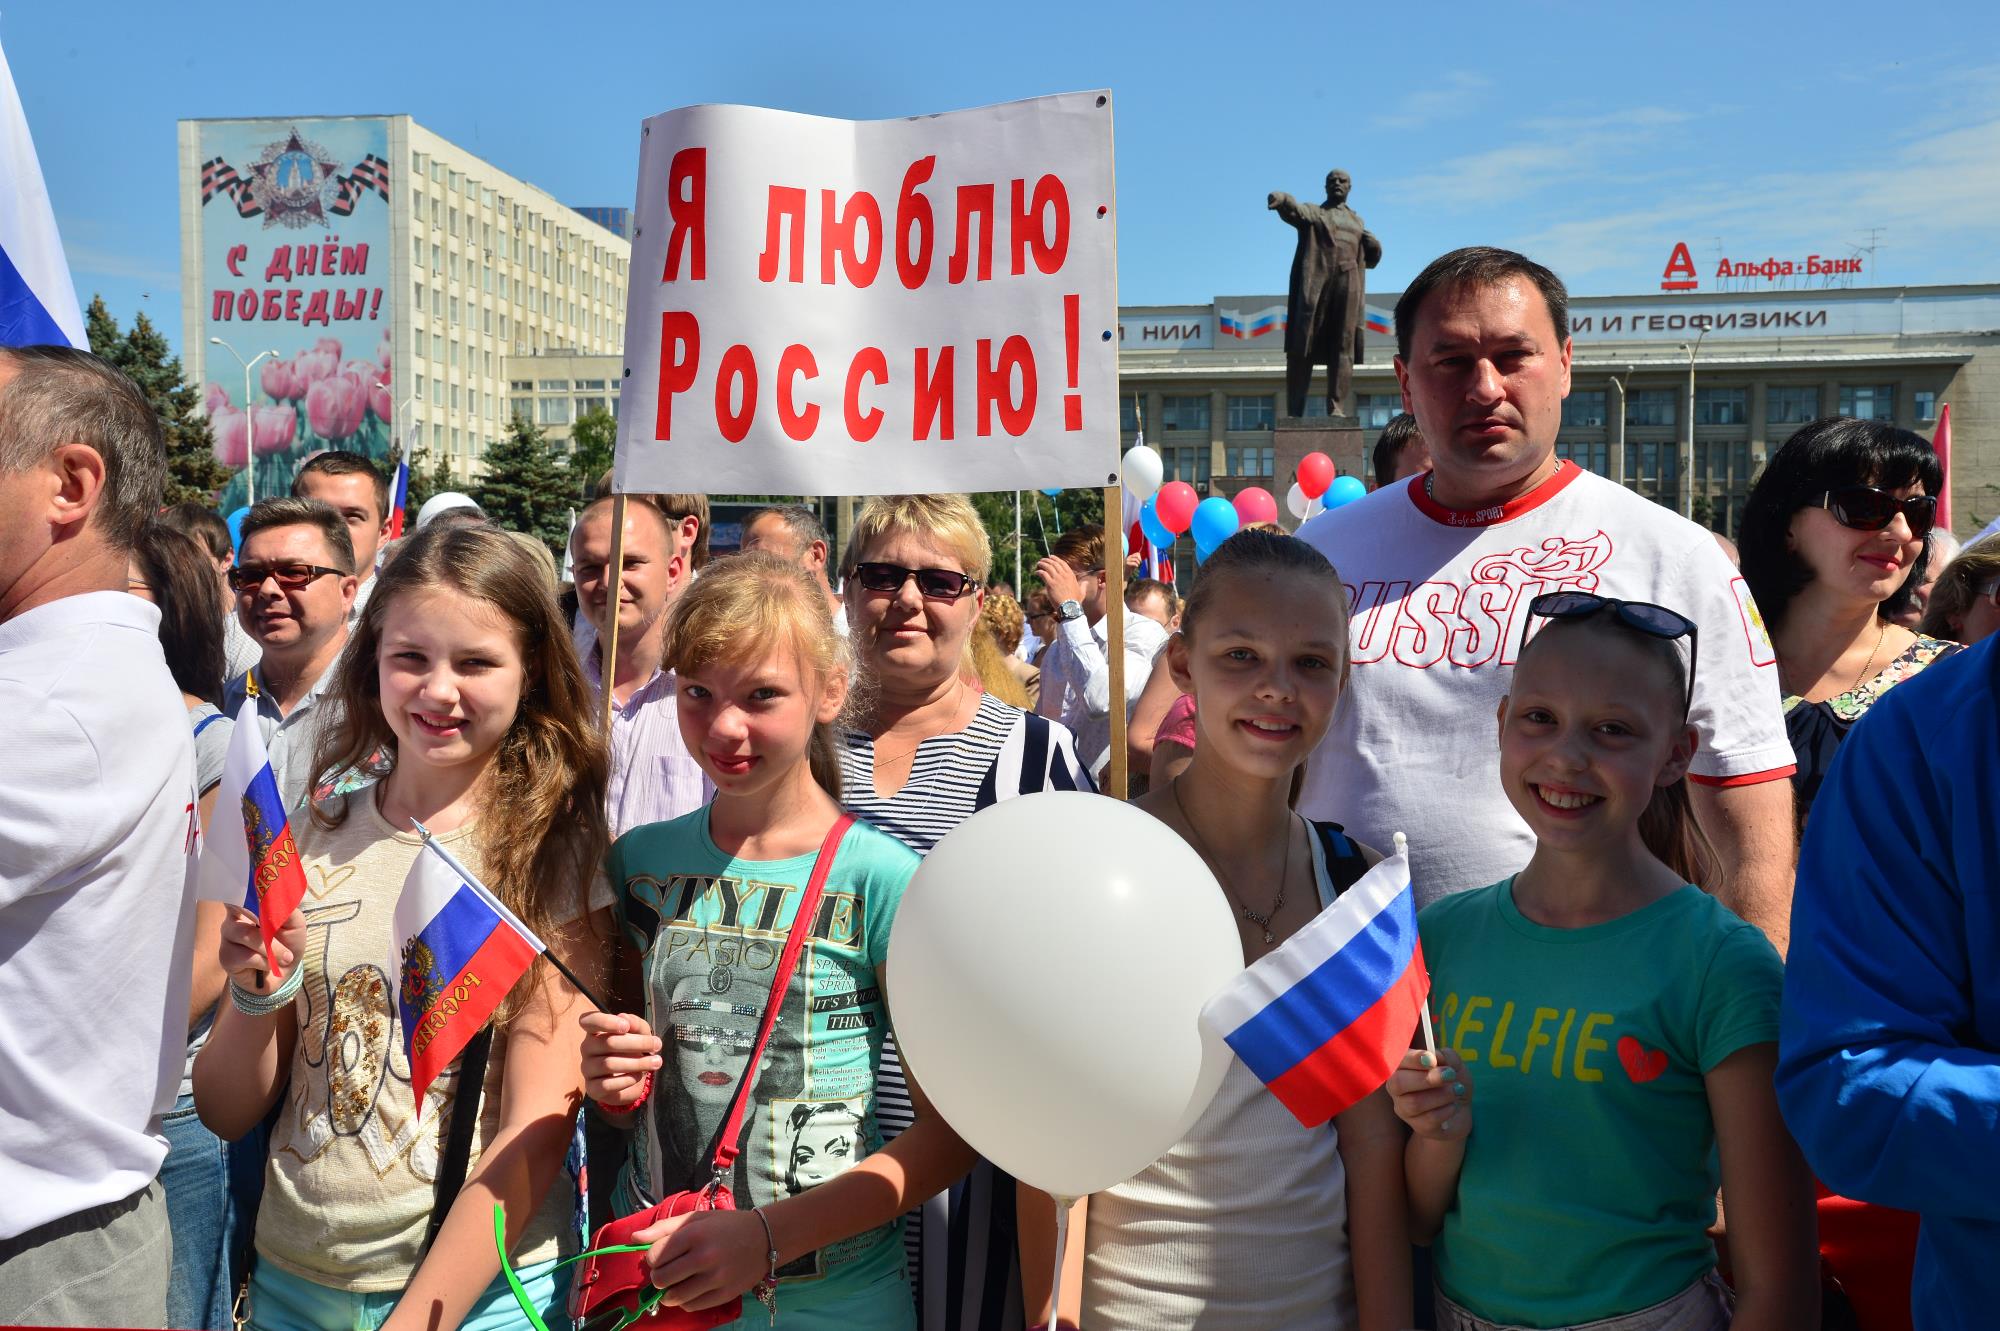 История праздника день россии очень познавательна